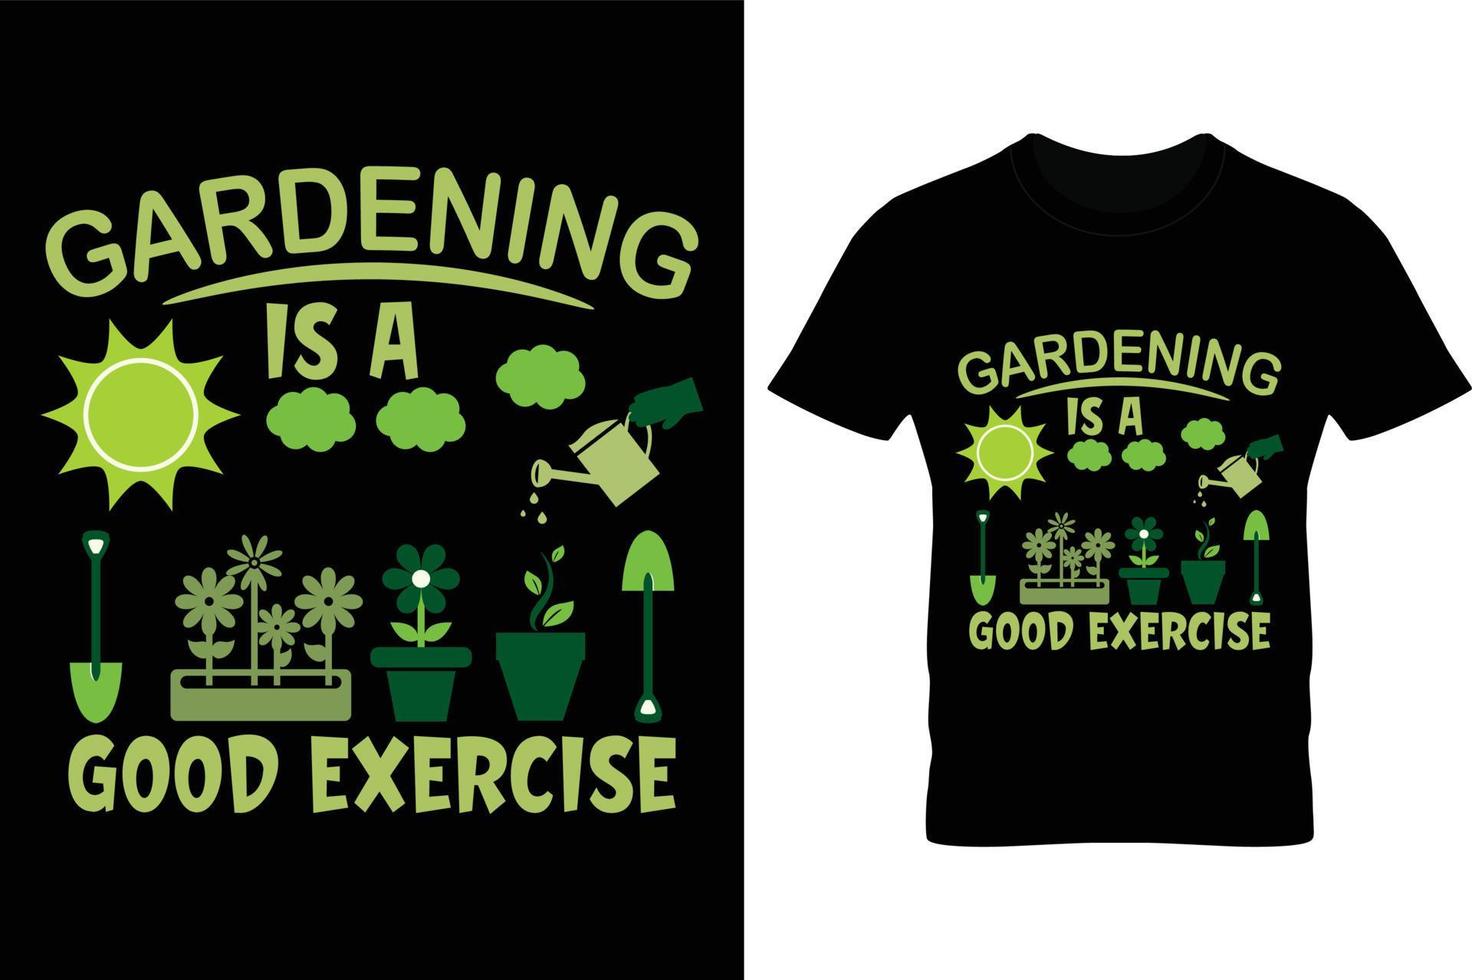 trädgårdsarbete är en bra design av t-shirt för träning, t-shirtdesign för trädgårdsarbete vektor